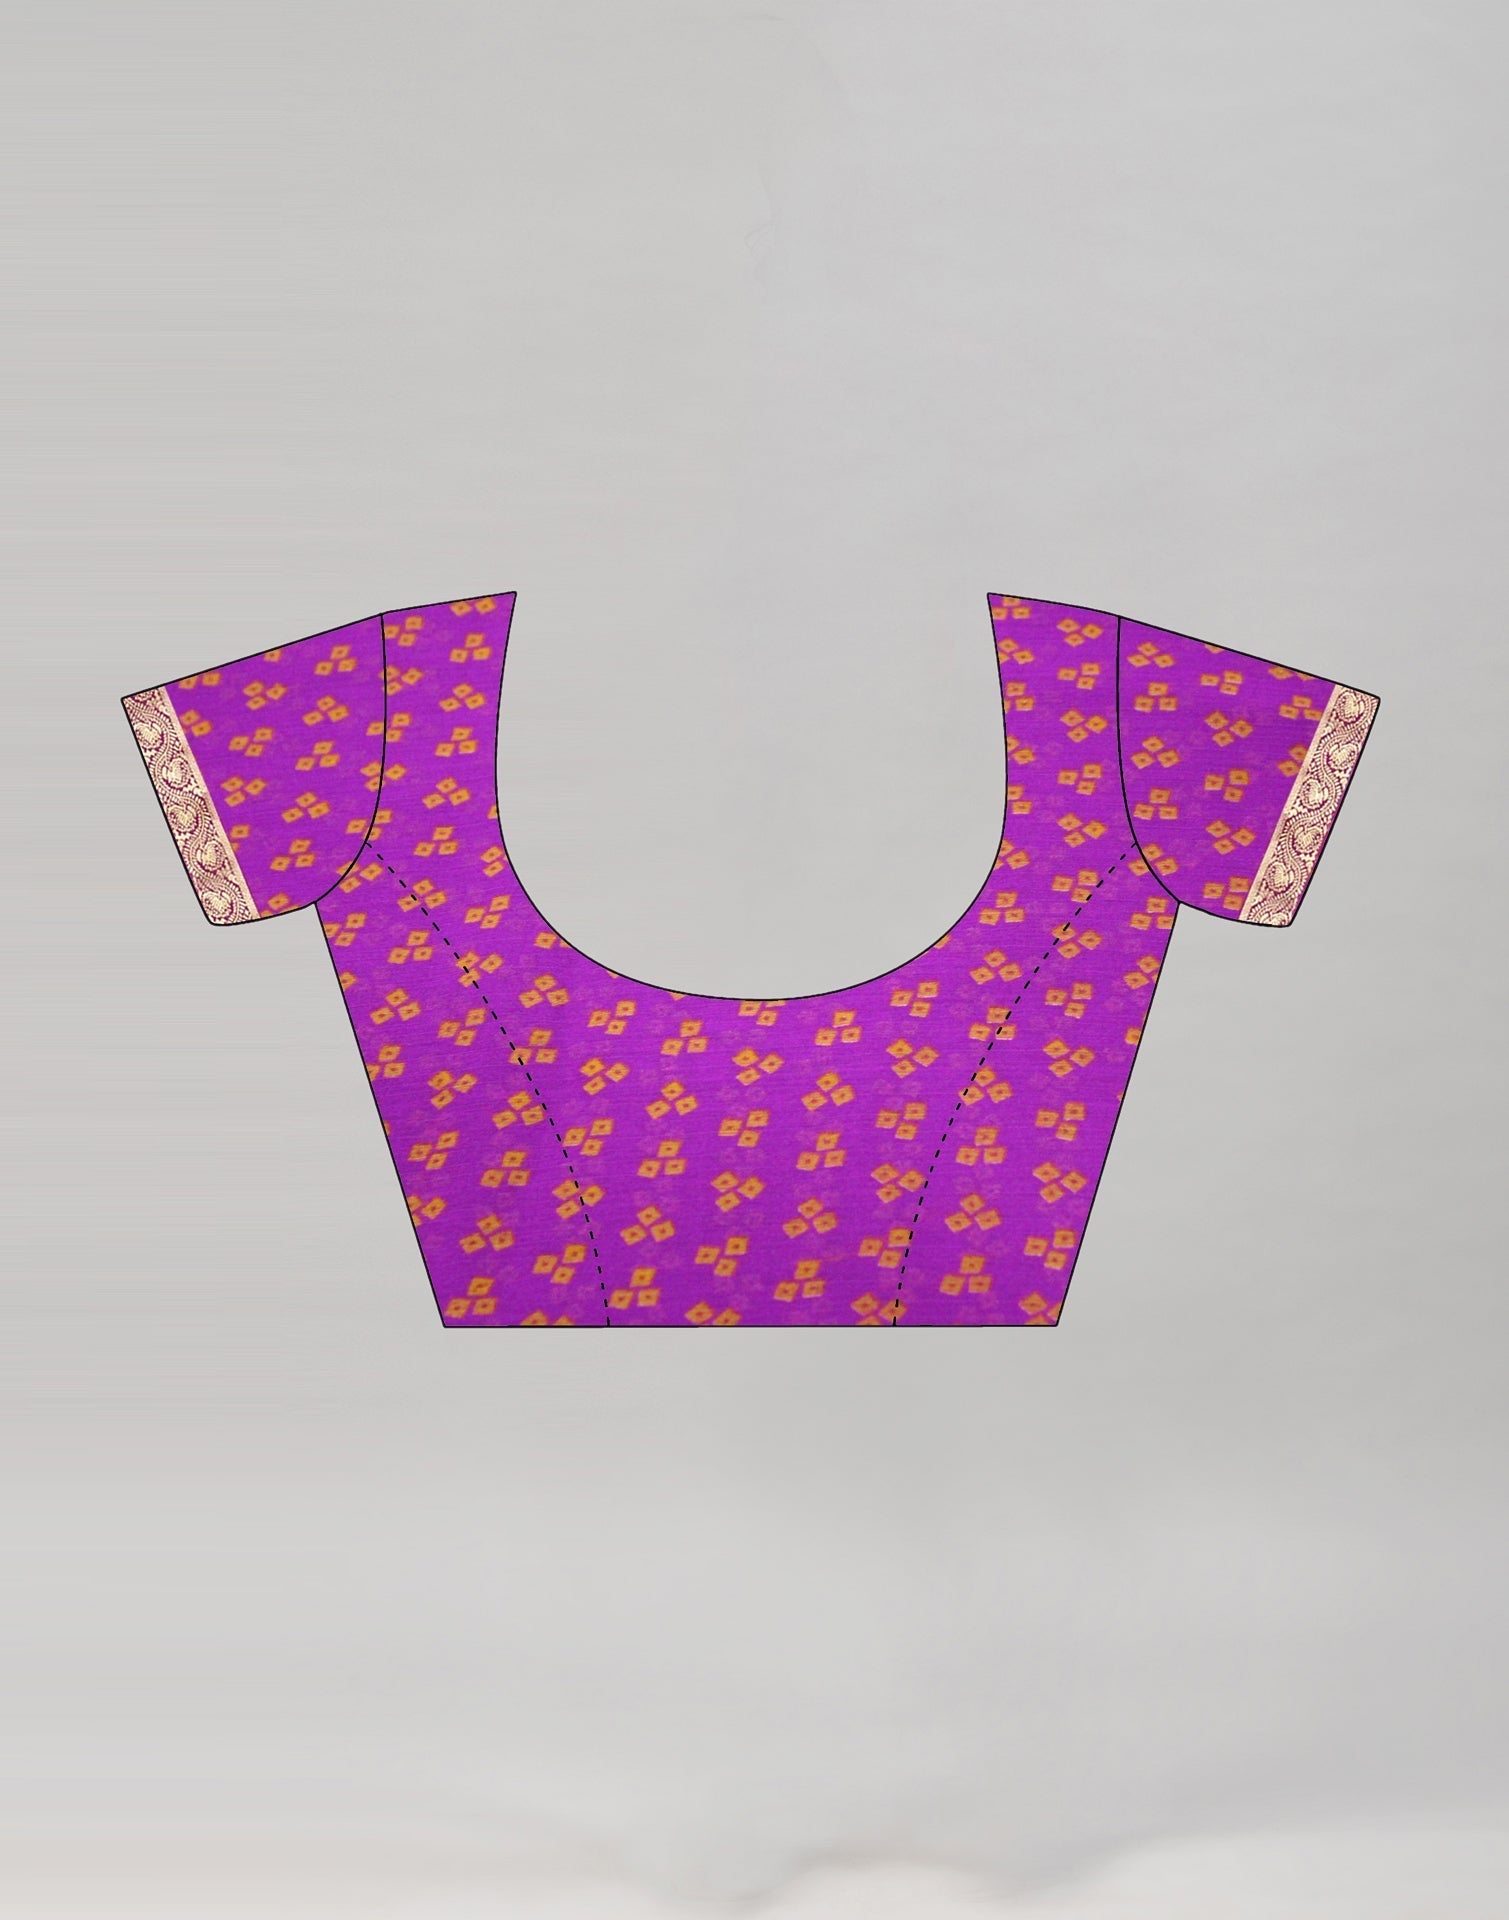 Purple Bandhani Printed Saree | Sudathi